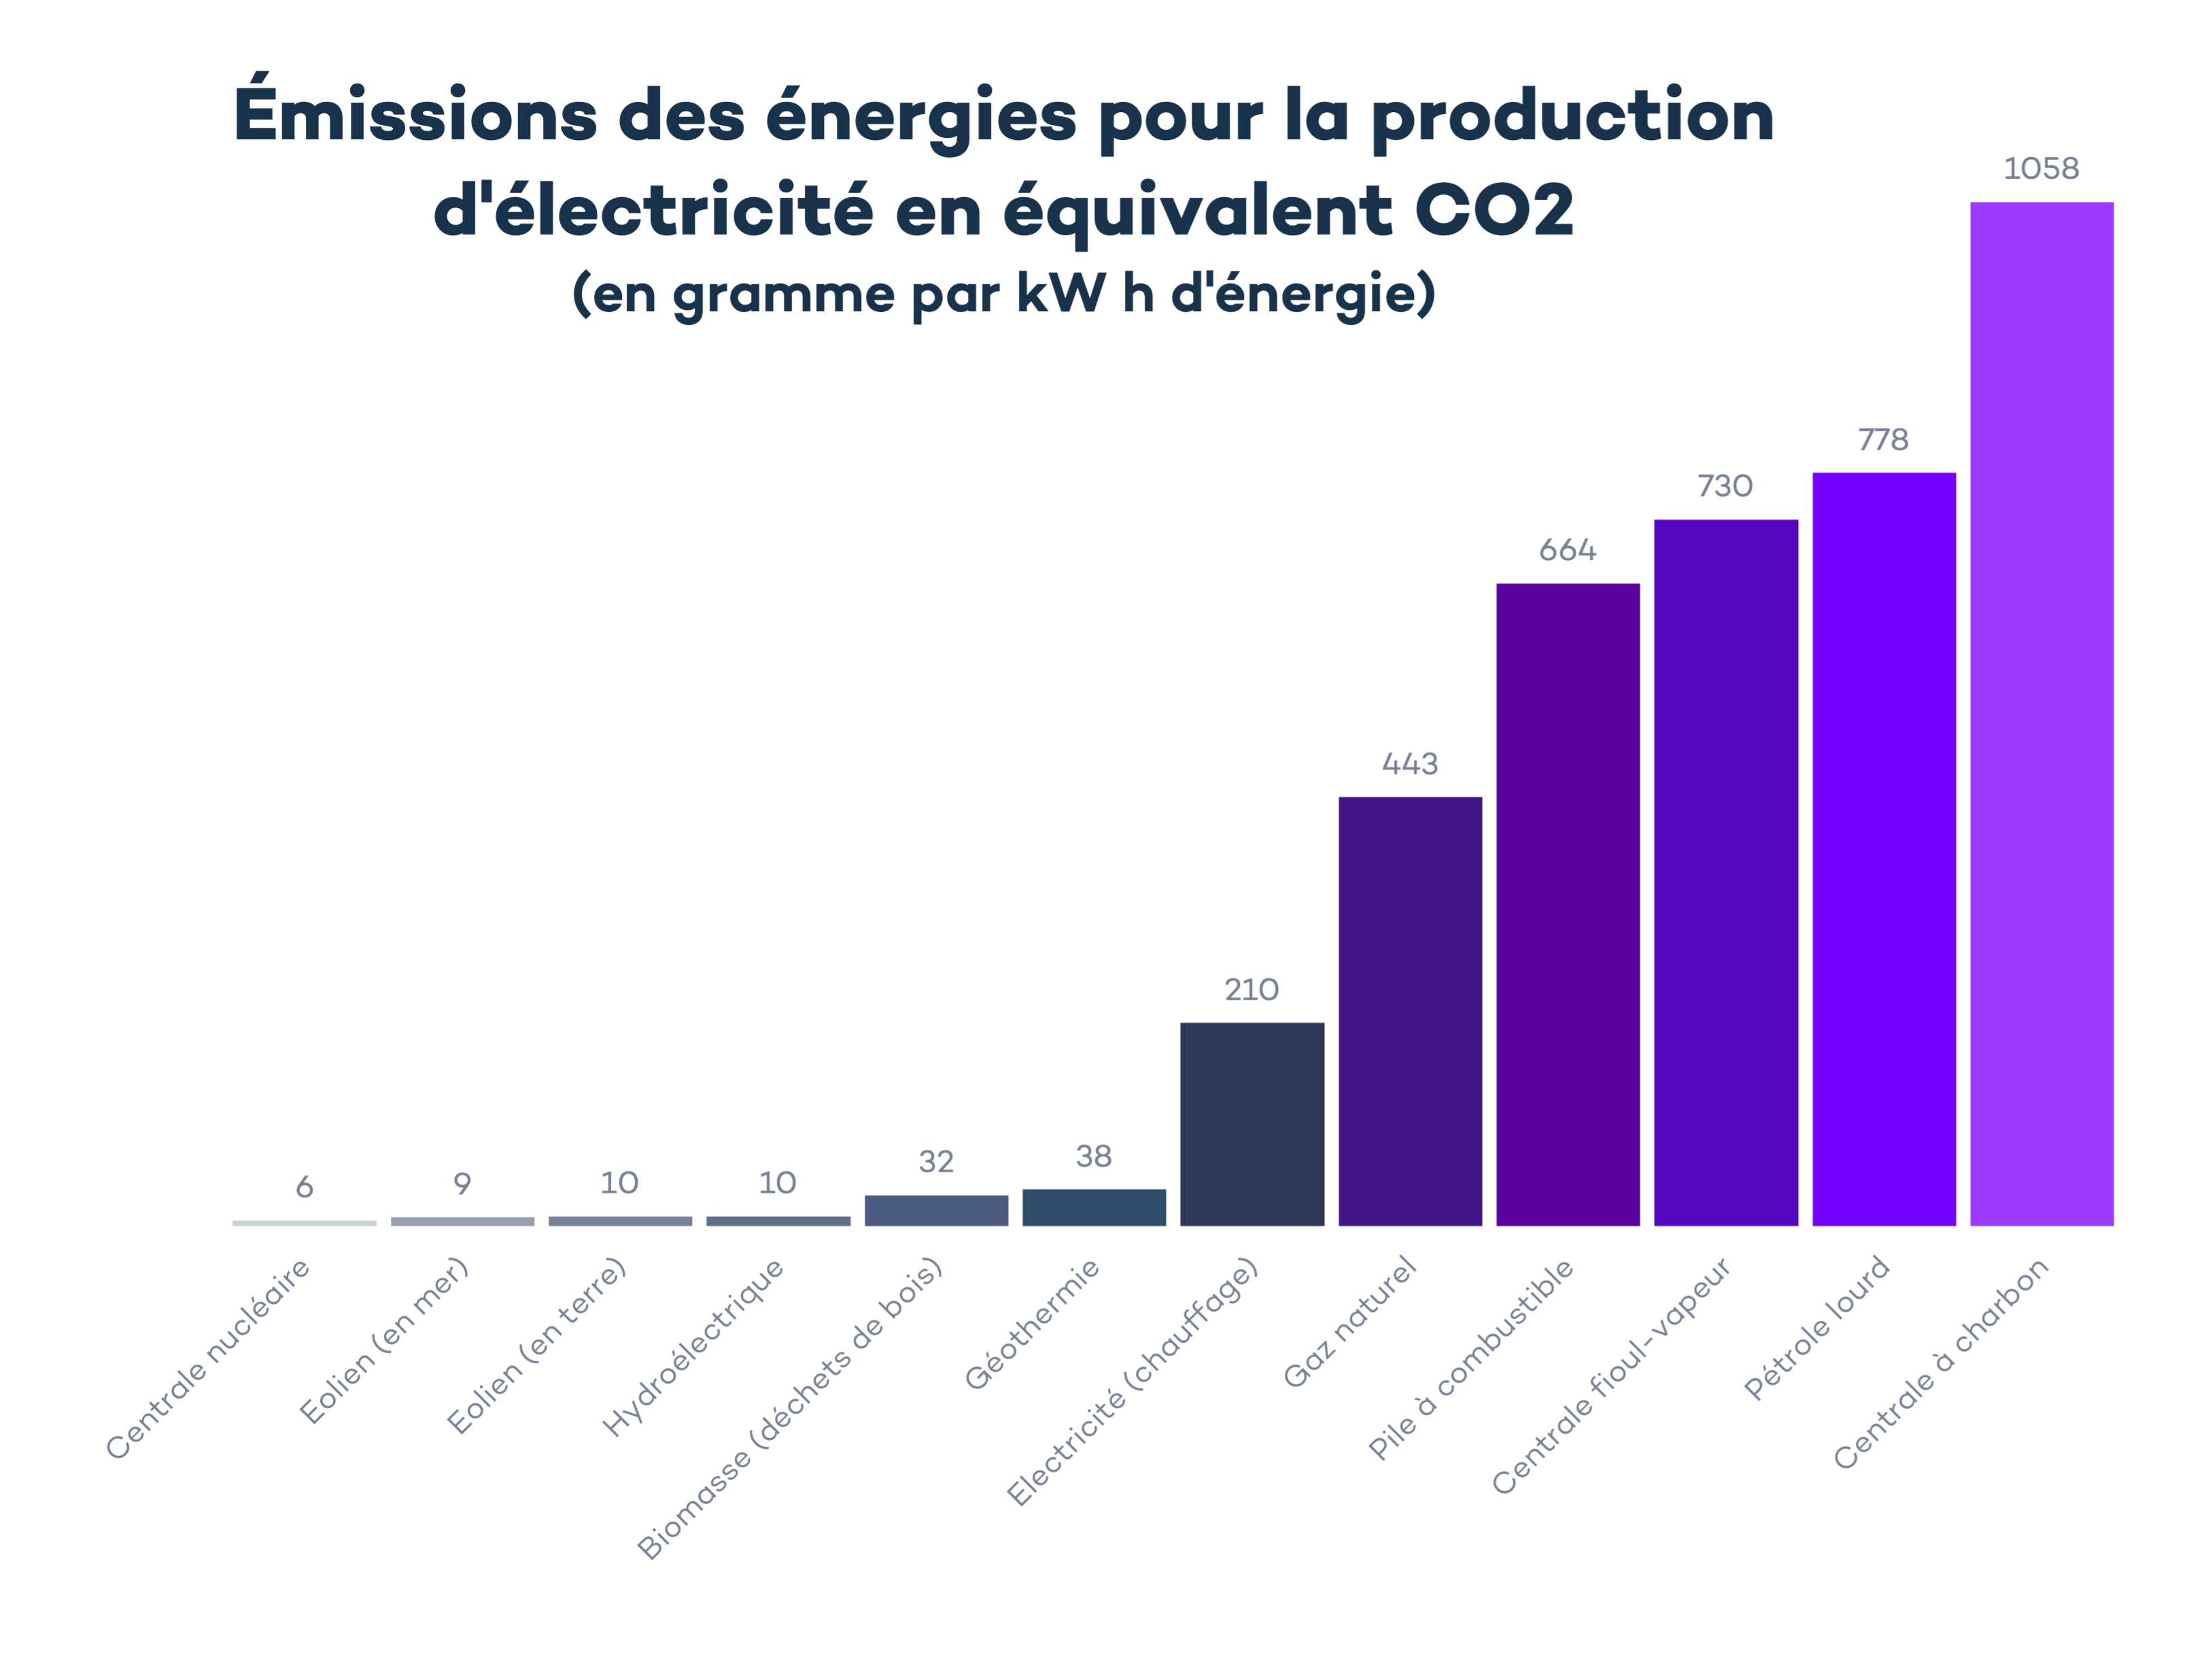 emissions des energies pour production electricite